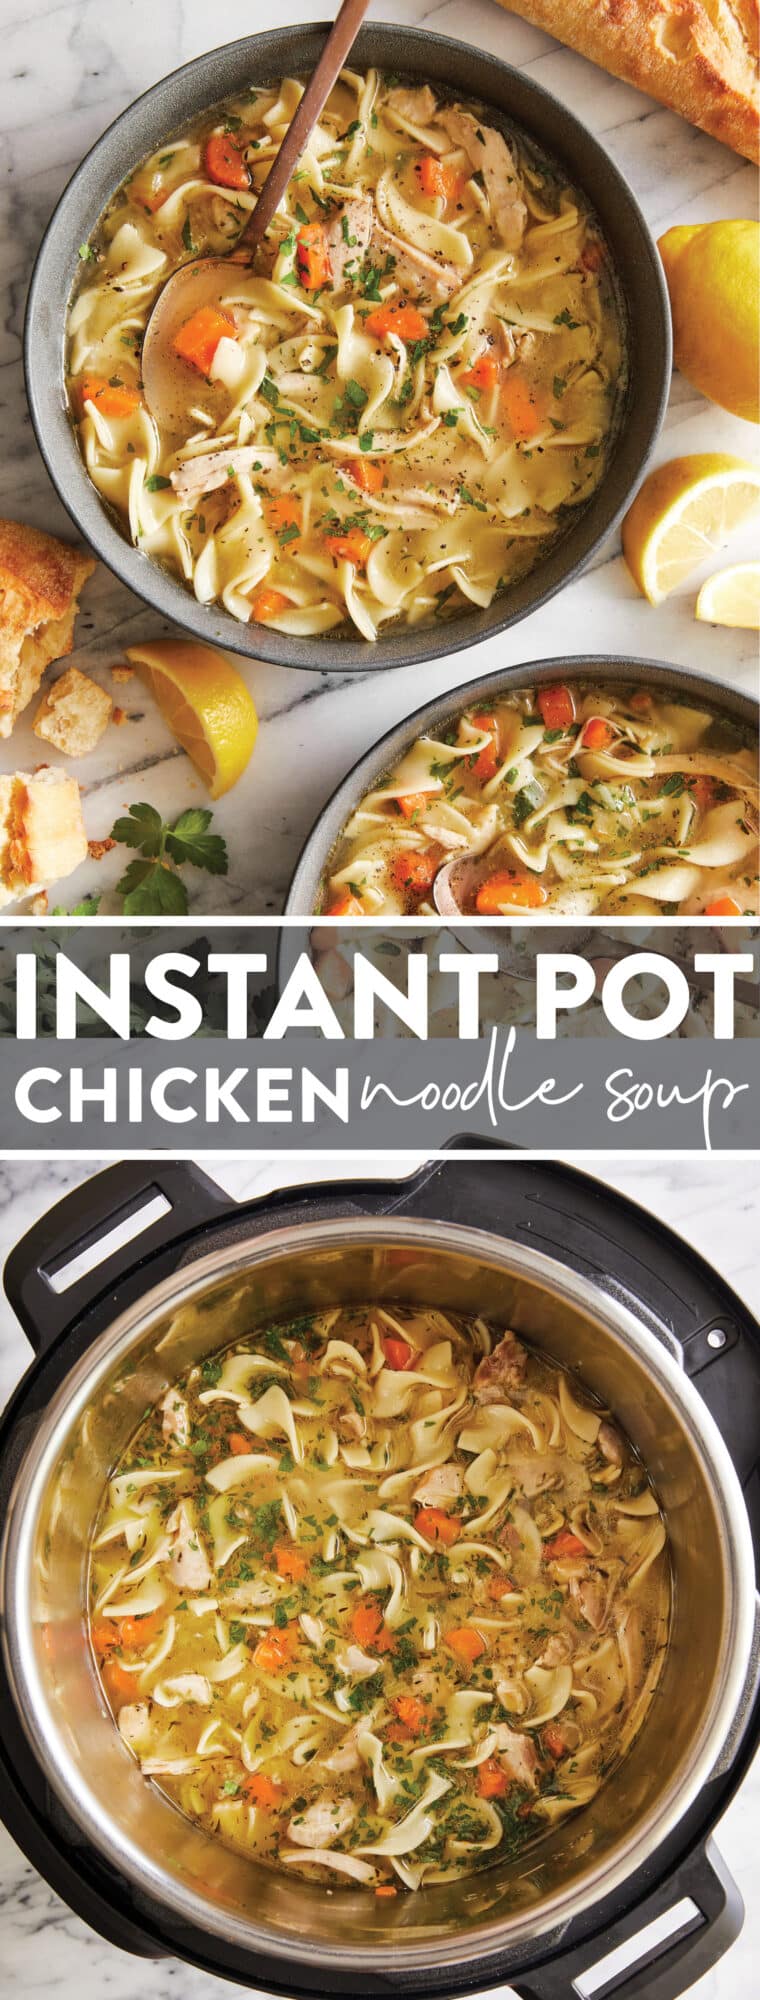 https://s23209.pcdn.co/wp-content/uploads/2018/02/Instant-Pot-Chicken-Noodle-Soup-2-760x2000.jpg